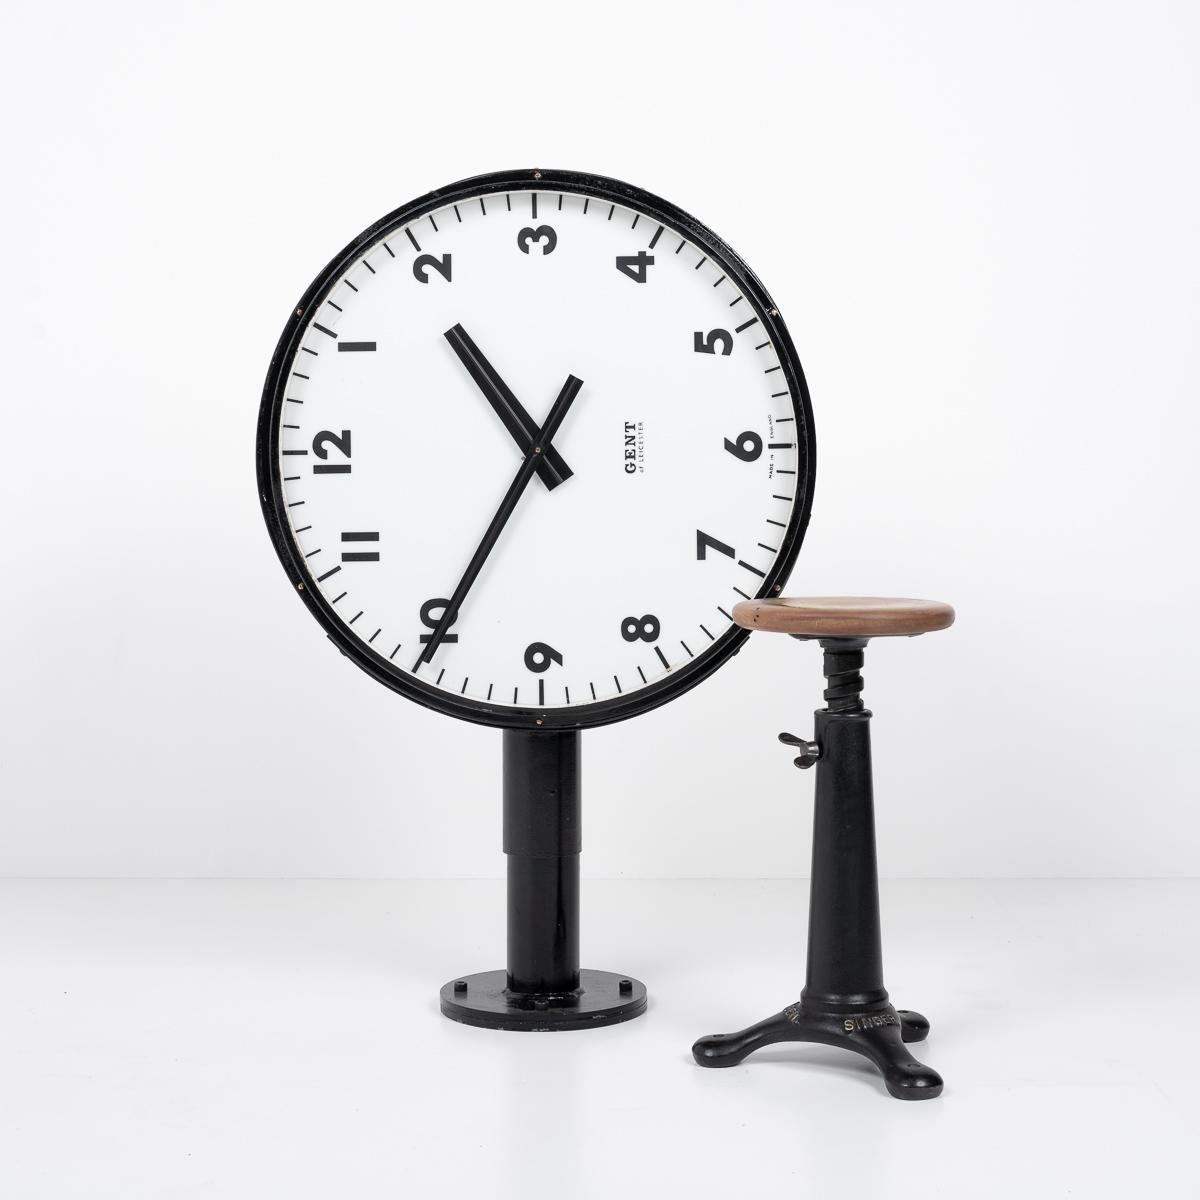 HORLOGE DE GARE LUMINEUSE DOUBLE FACE DES ANNÉES 1960

Une superbe horloge de gare éclairée des deux côtés, fabriquée par le célèbre horloger britannique Gents of Leicester, vers 1960.

Ce garde-temps emblématique est doté d'un élégant boîtier